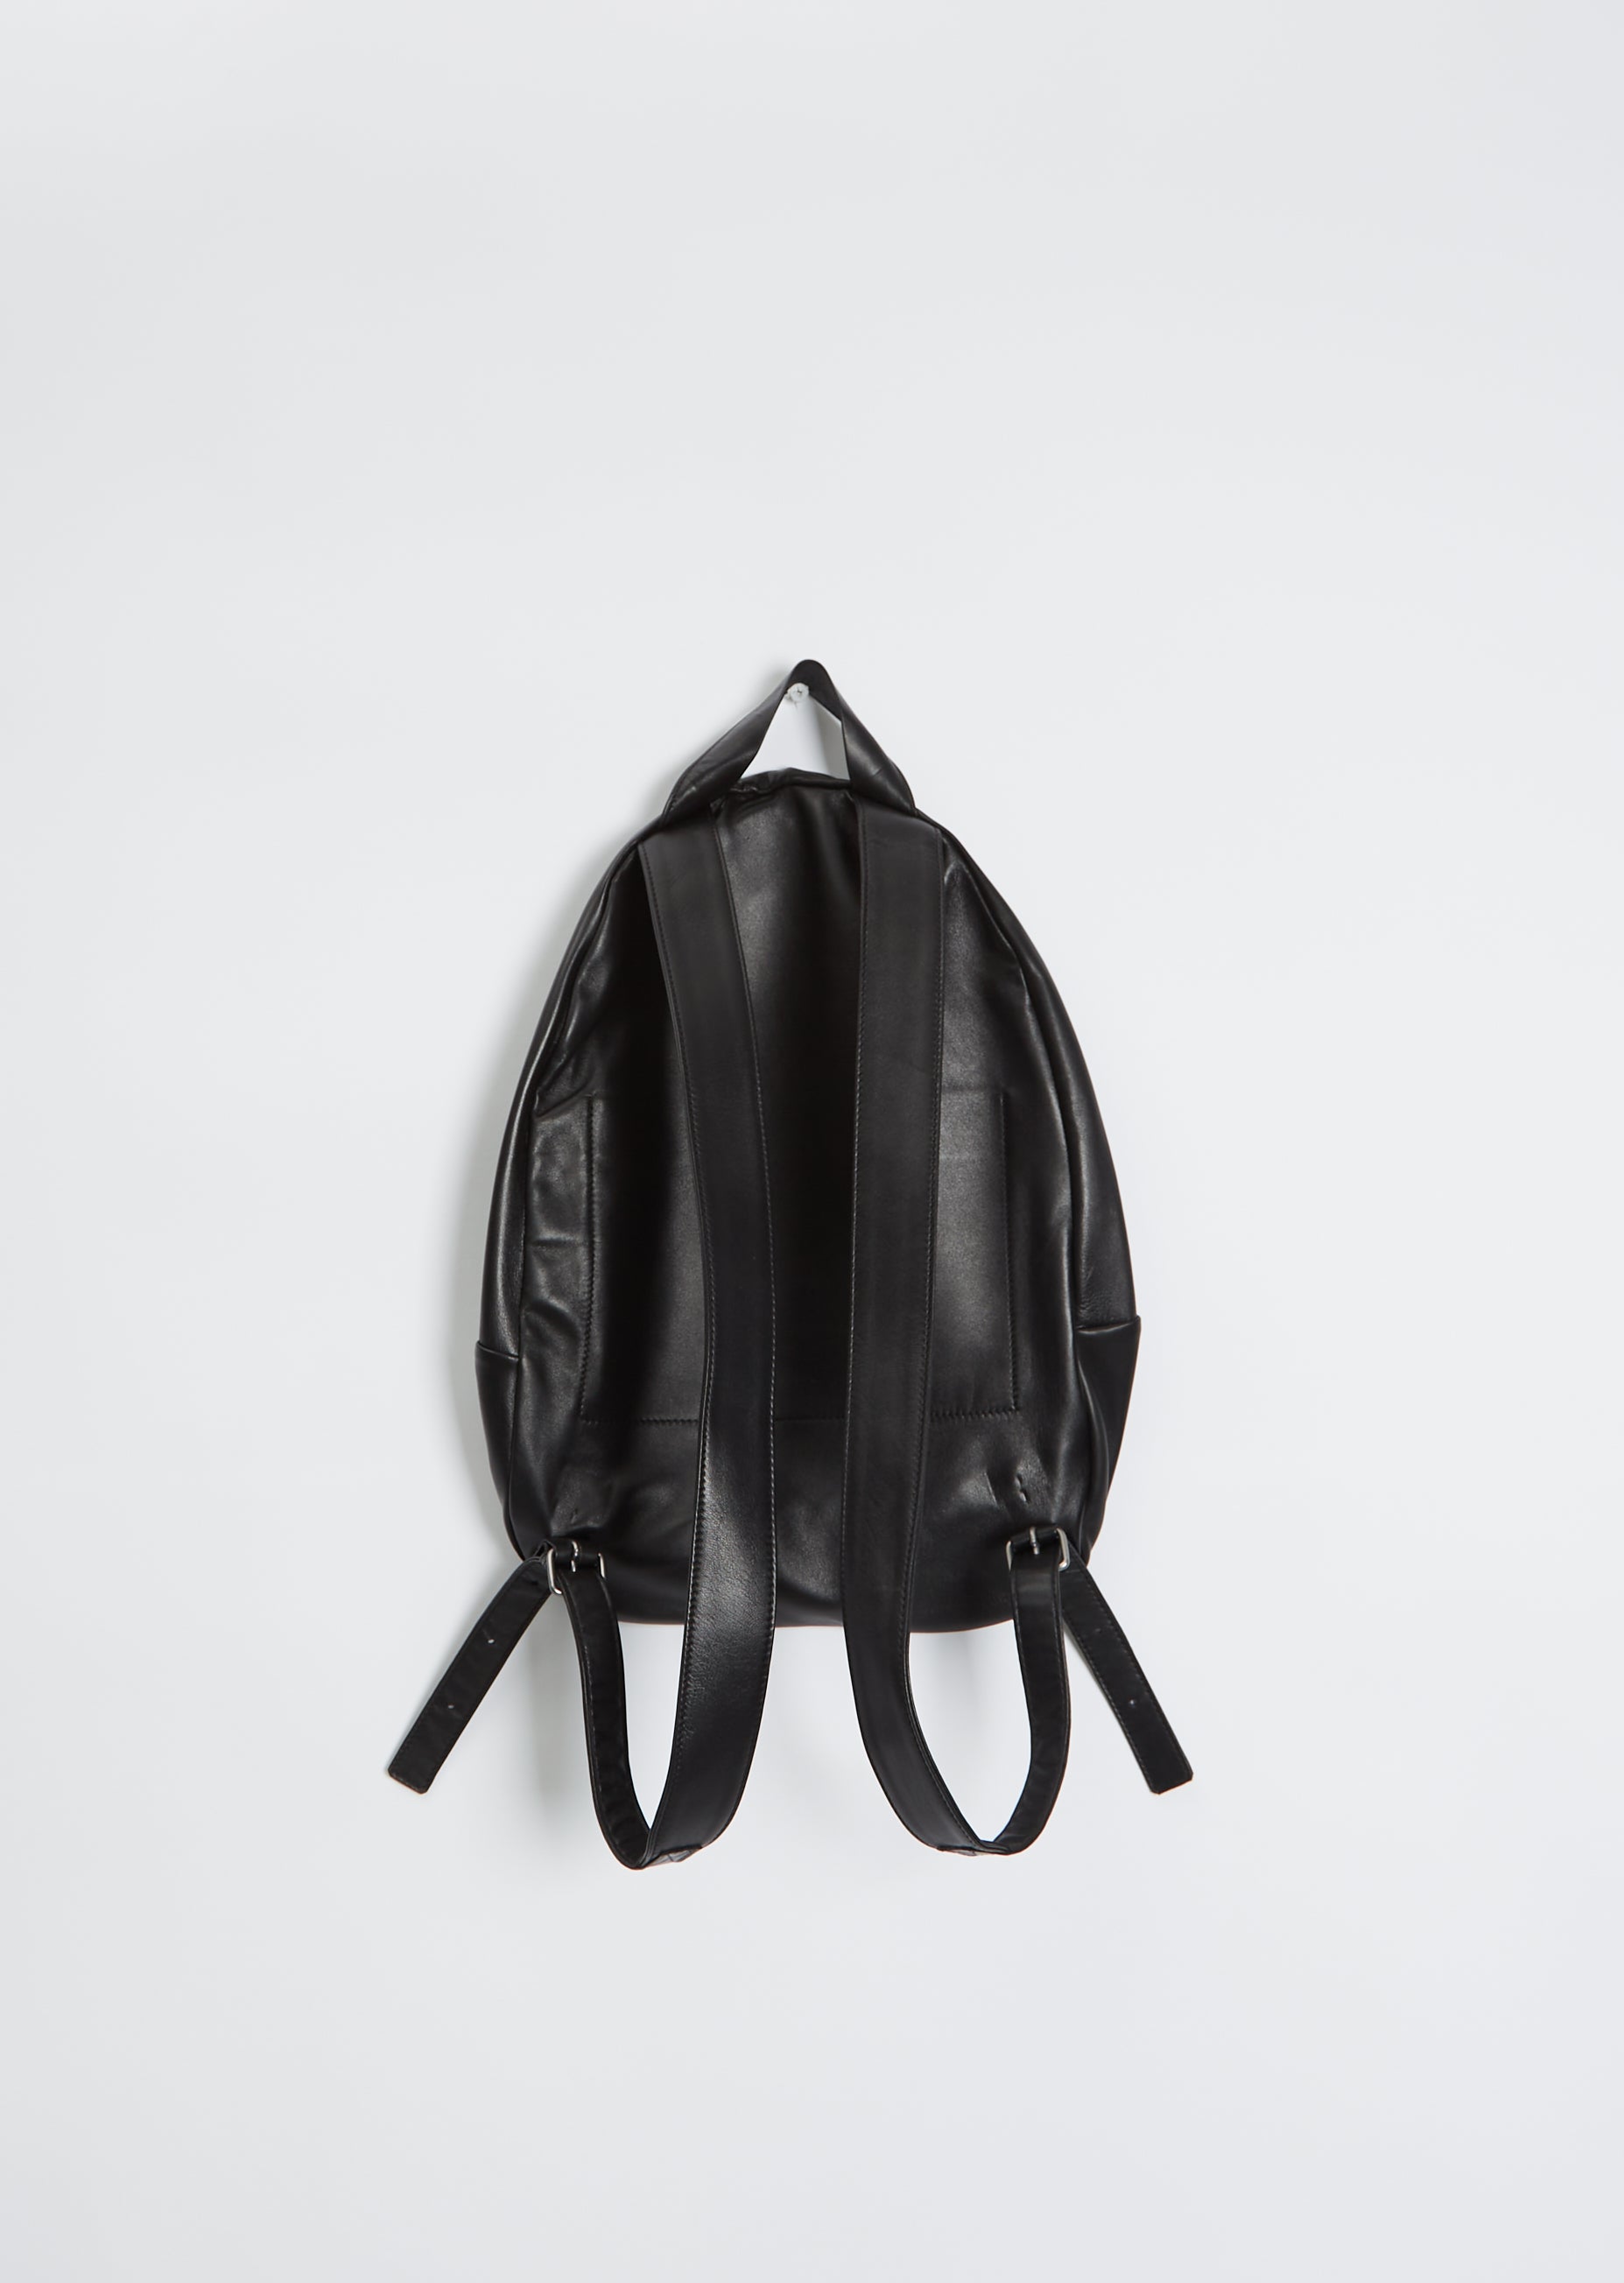 Islah Backpack – CLN